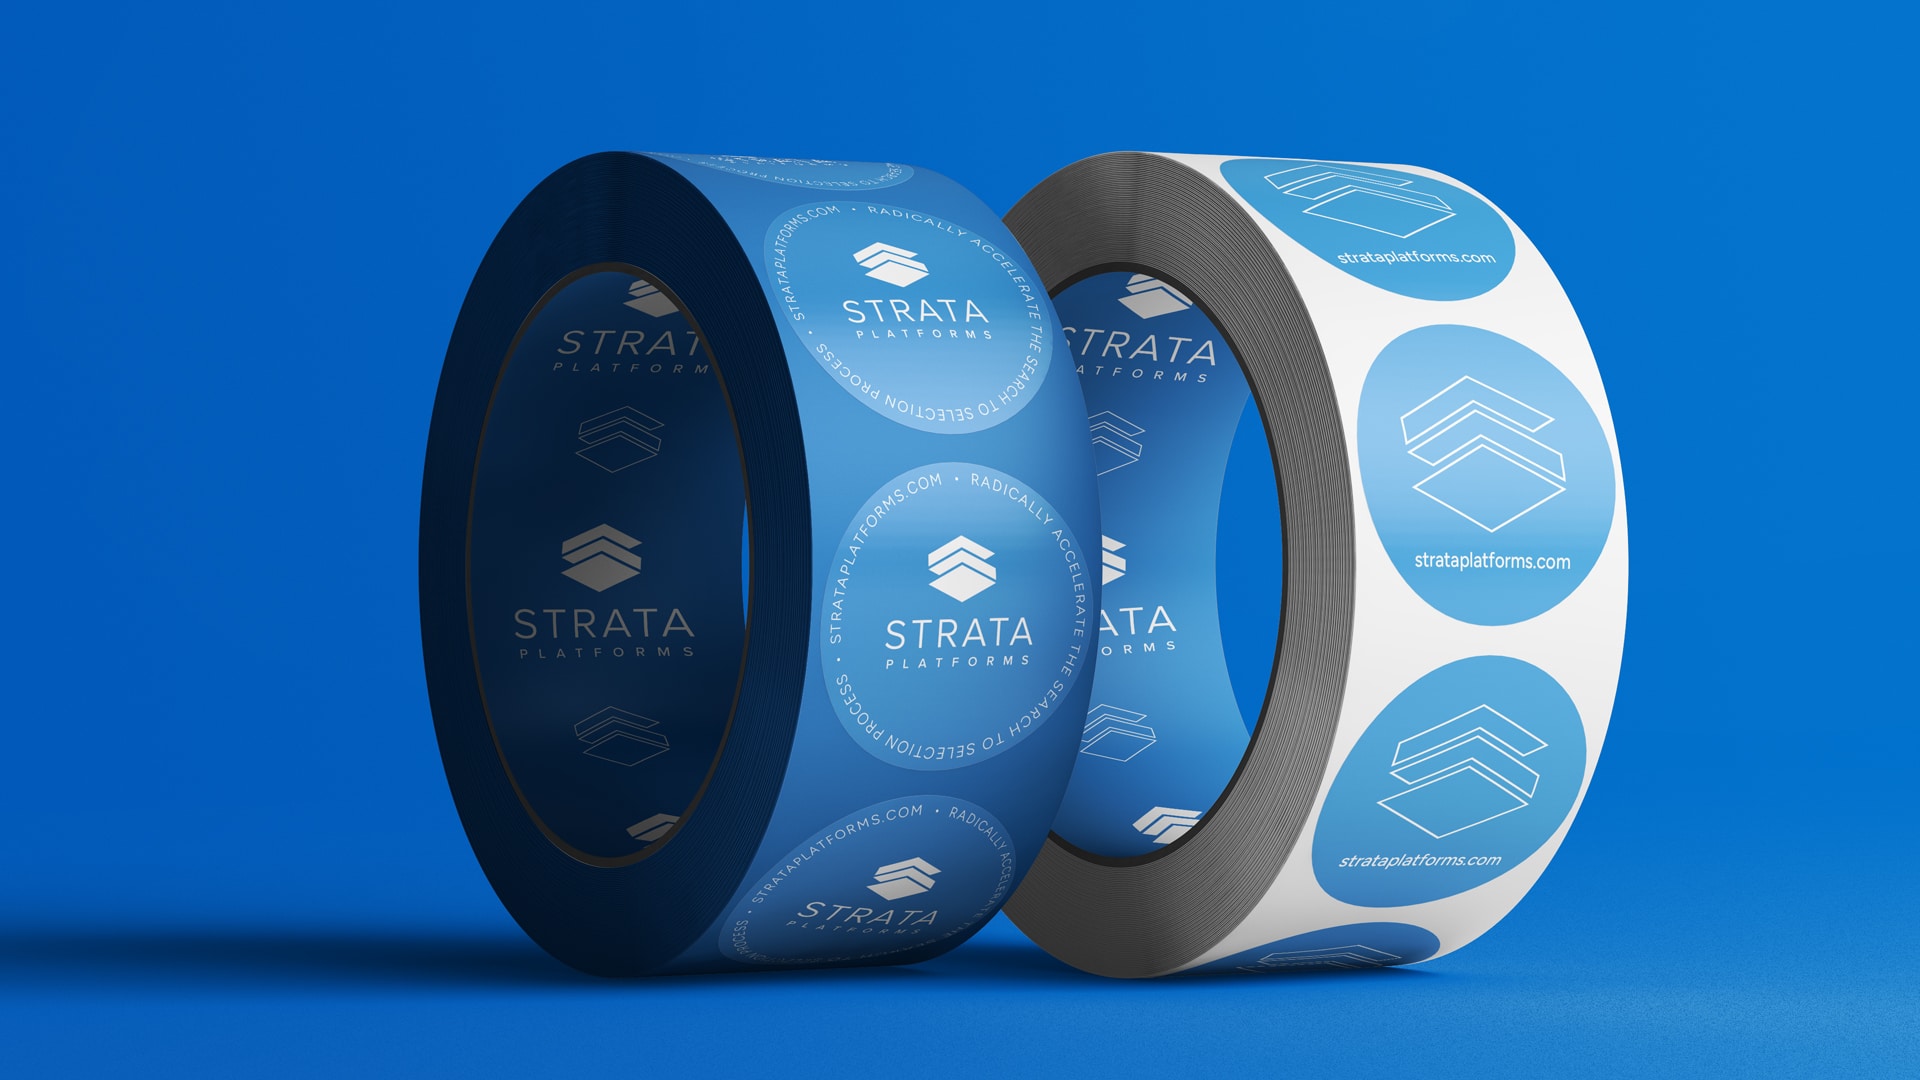 Strata Platforms SaaS Sticker Design